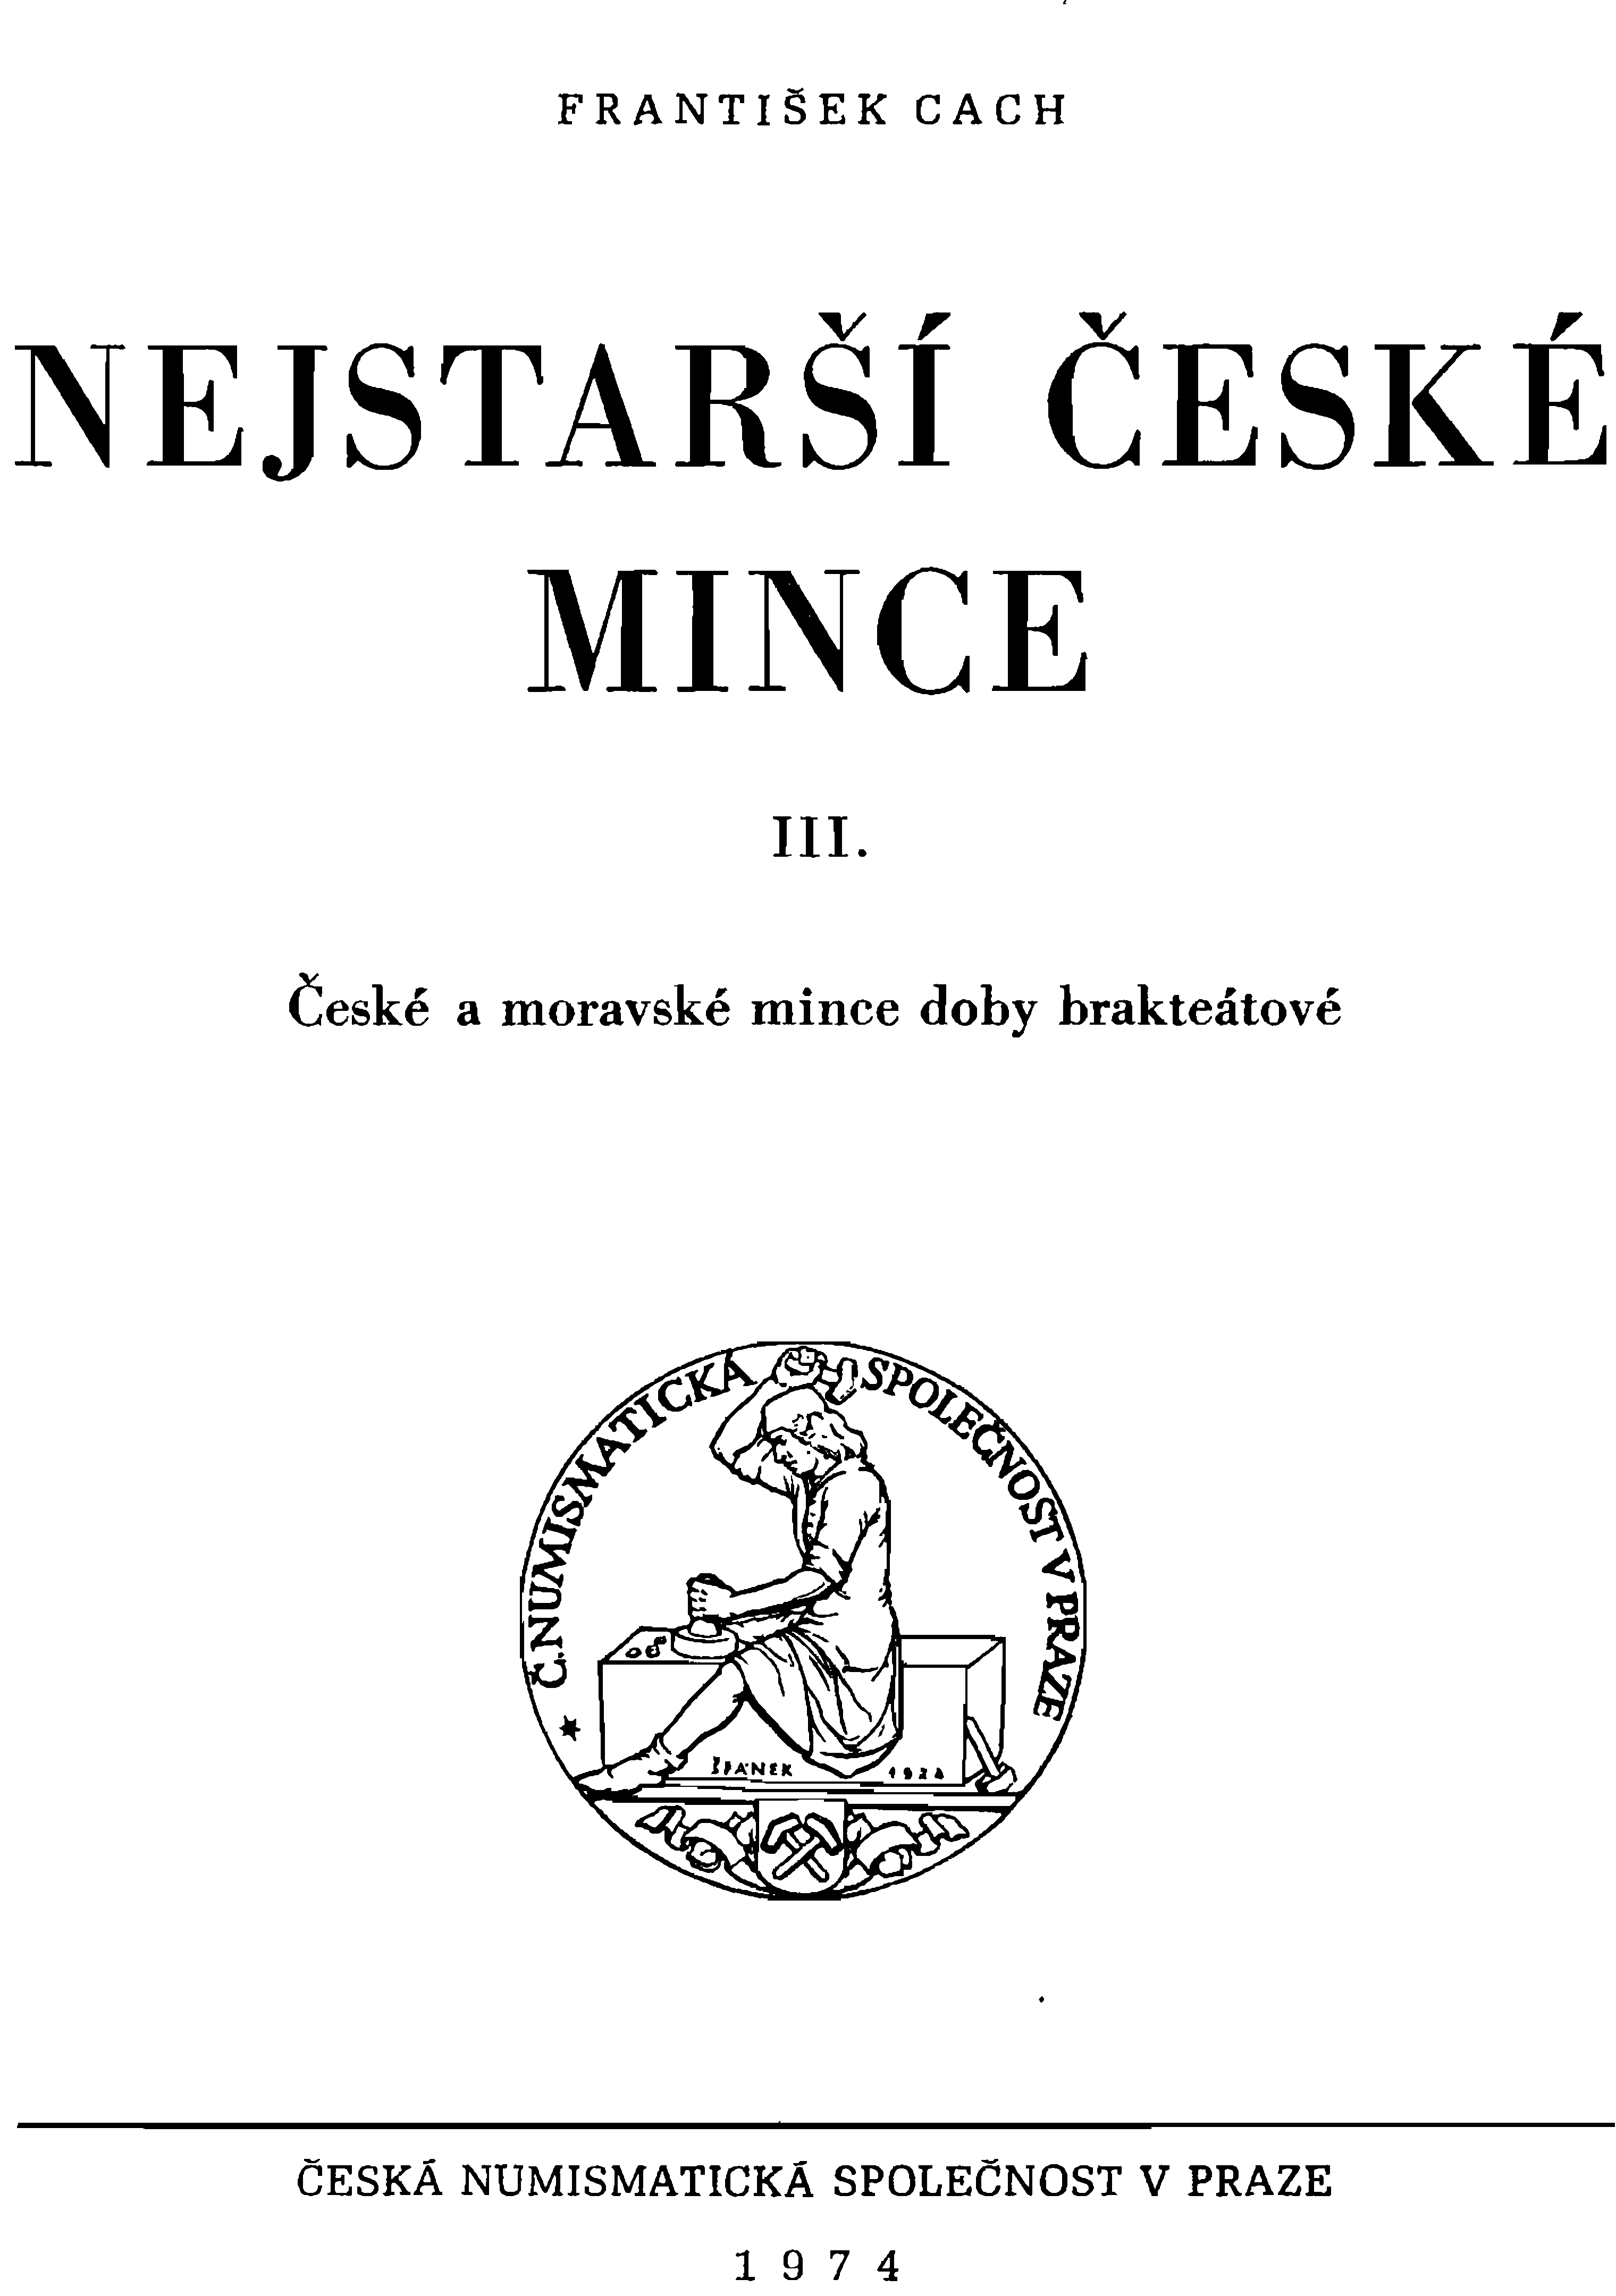 FRANTIŠEK CACH ČESKÉ NEJSTARŠí MINCE III.